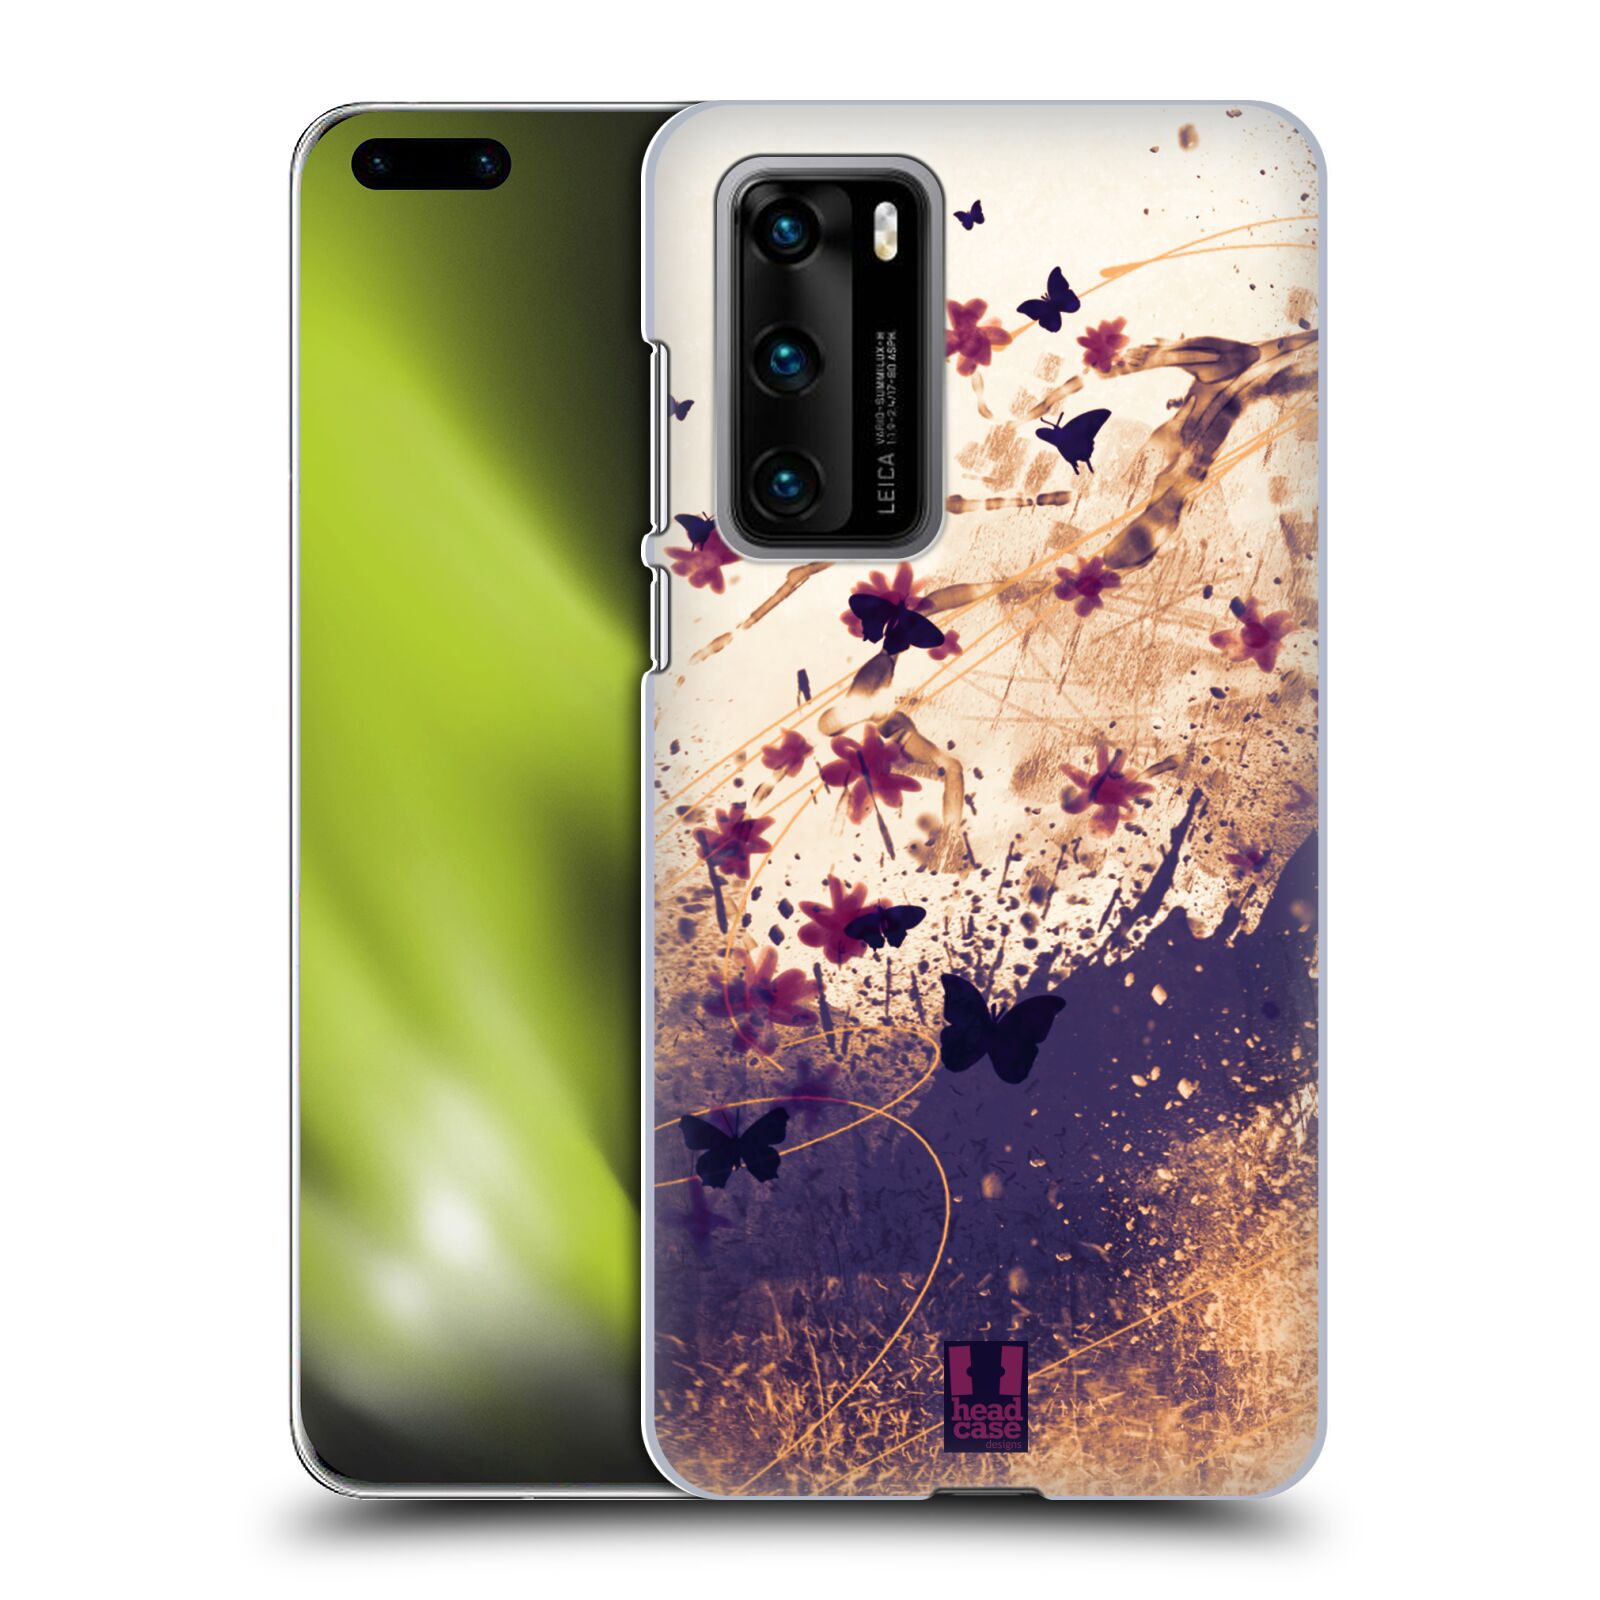 Zadní obal pro mobil Huawei P40 - HEAD CASE - Barevné květy a motýlci